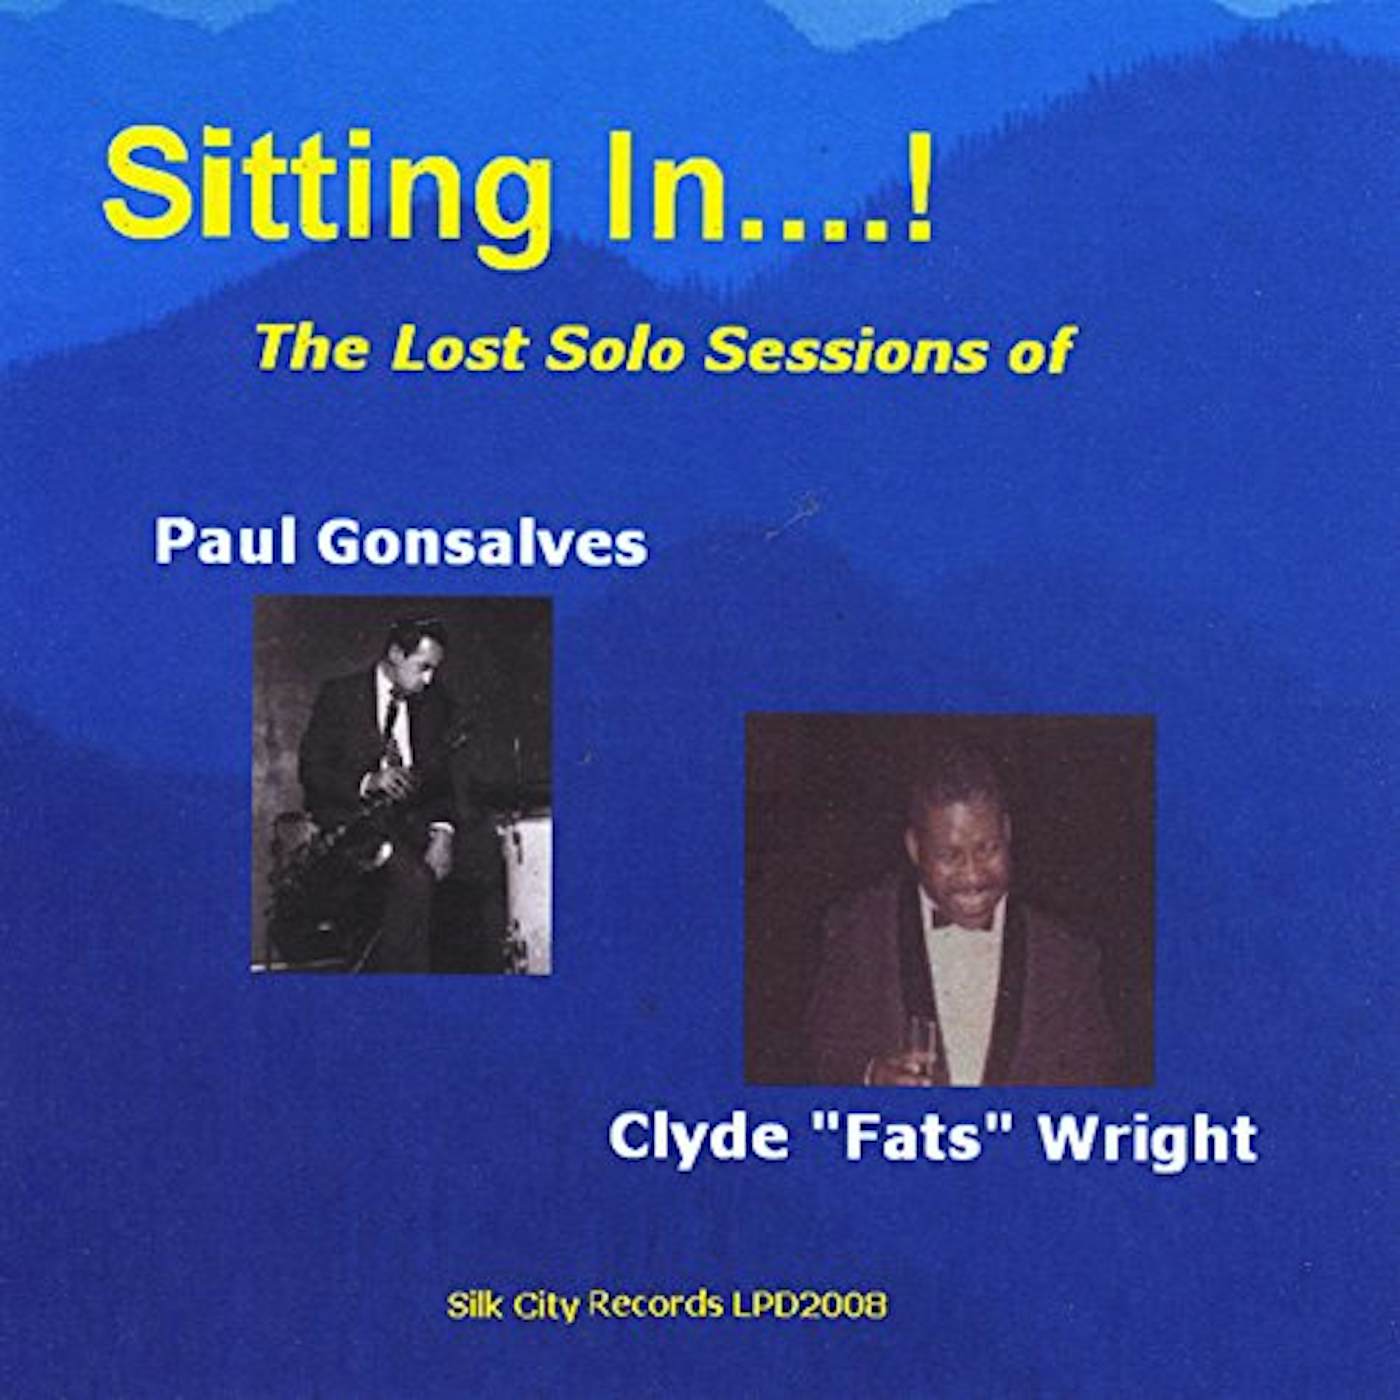 Paul Gonsalves SITTING IN CD